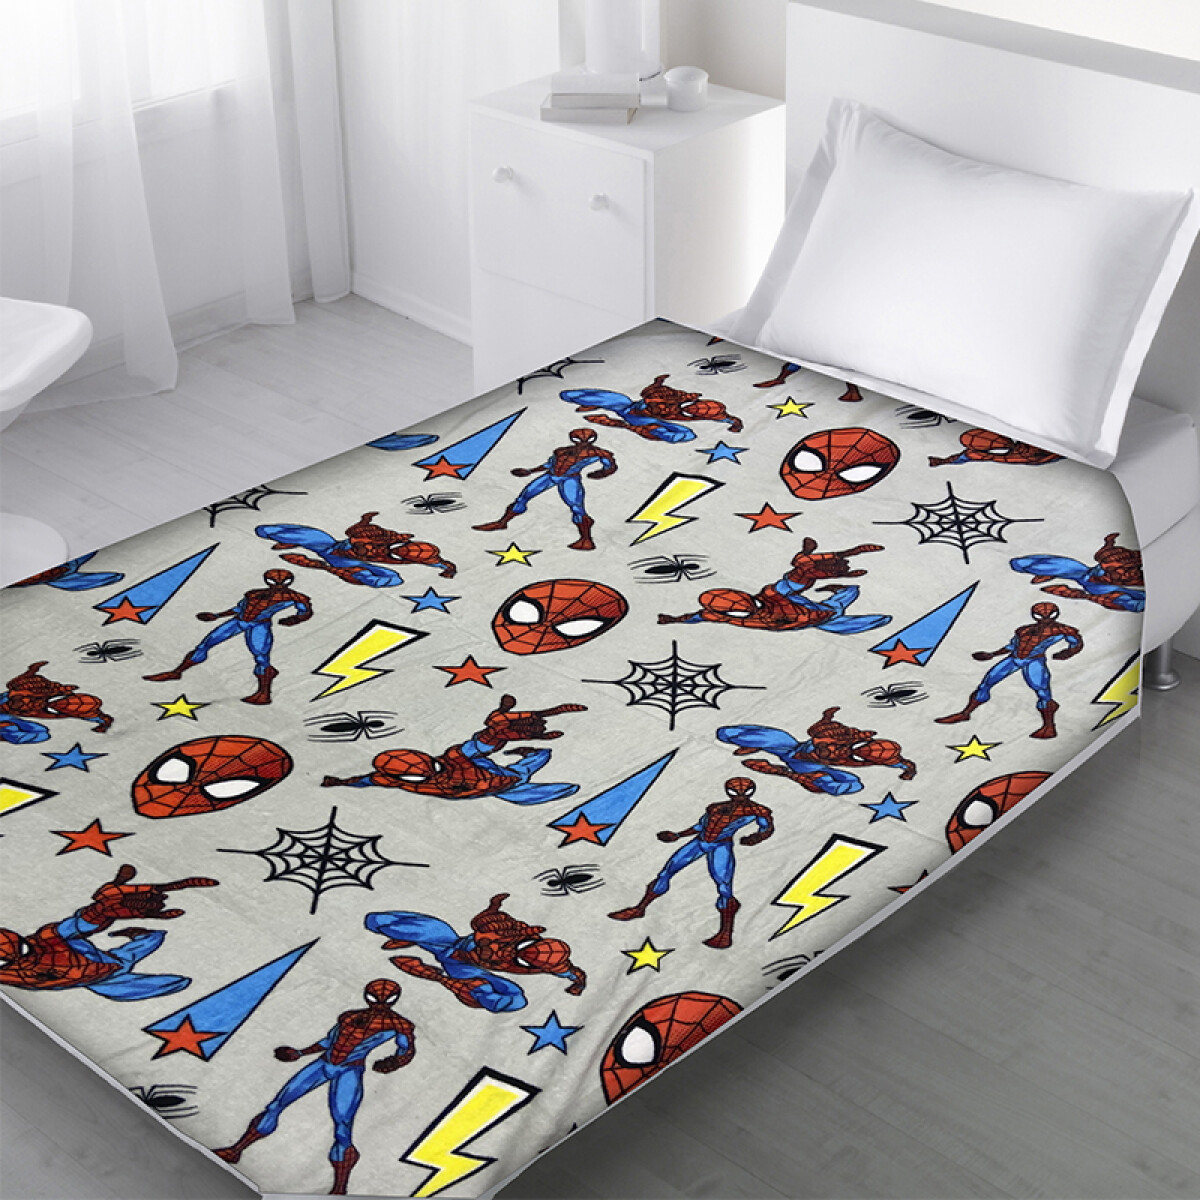 Frazada Infantil 120 x 160 cm - Spiderman 